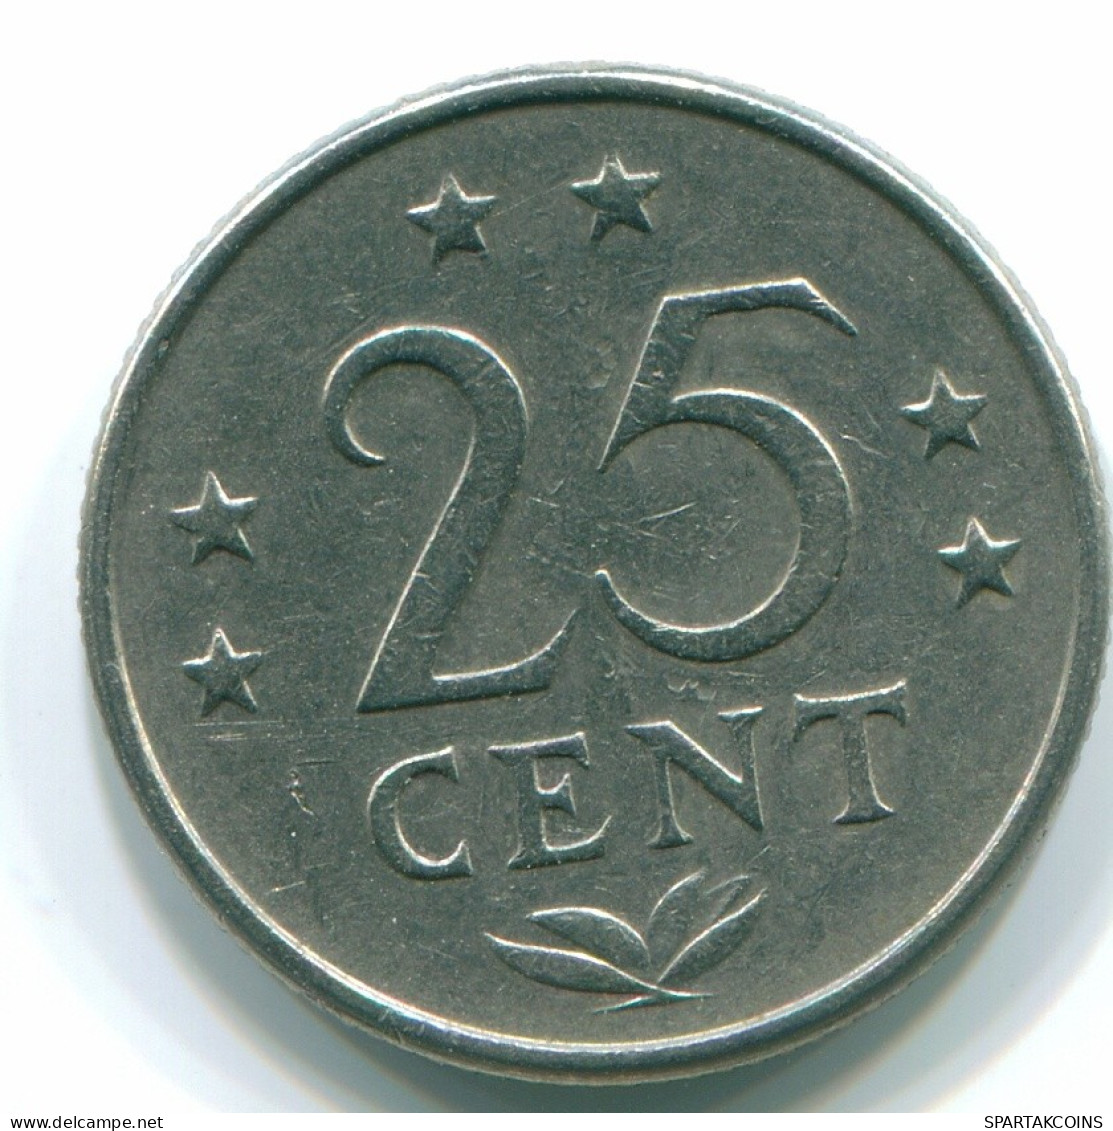 25 CENTS 1970 NIEDERLÄNDISCHE ANTILLEN Nickel Koloniale Münze #S11431.D.A - Niederländische Antillen